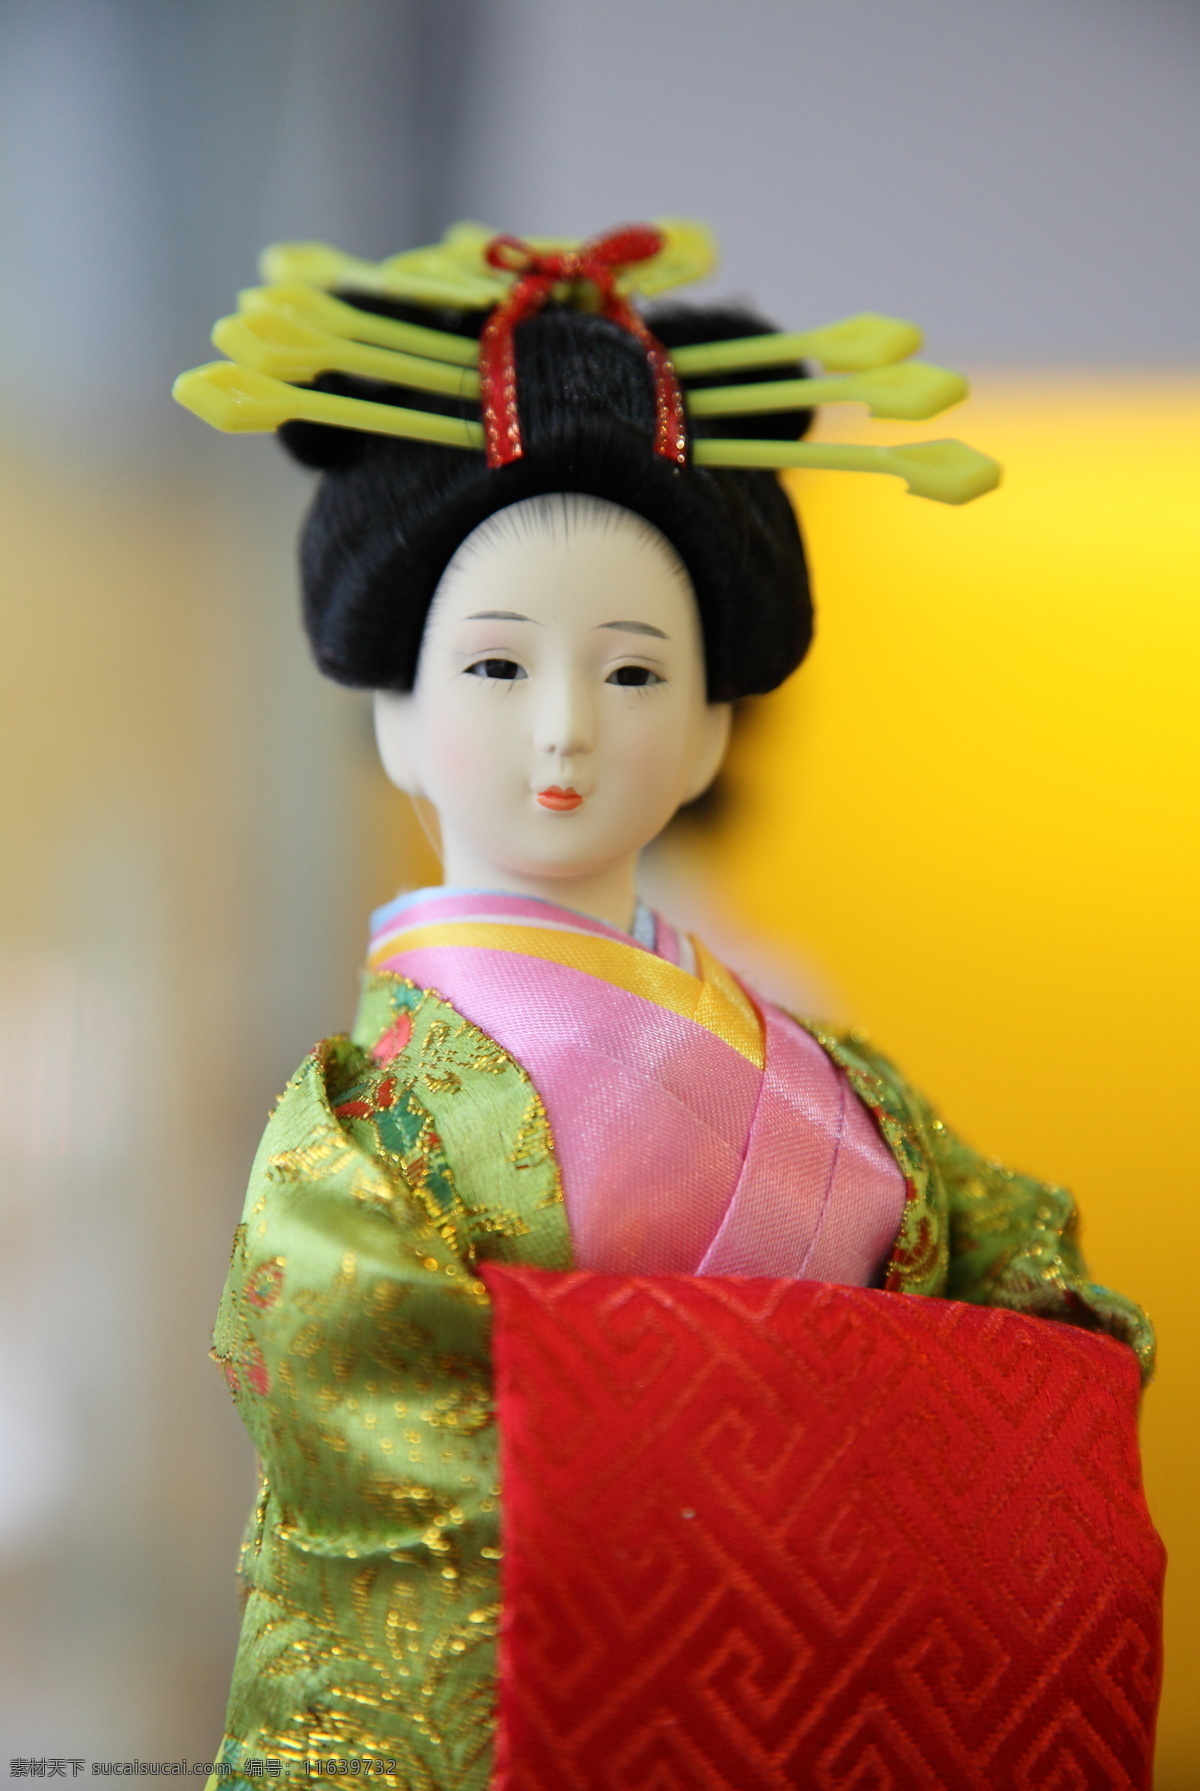 木偶 日本 和服 女子 工艺品摄影 文化艺术